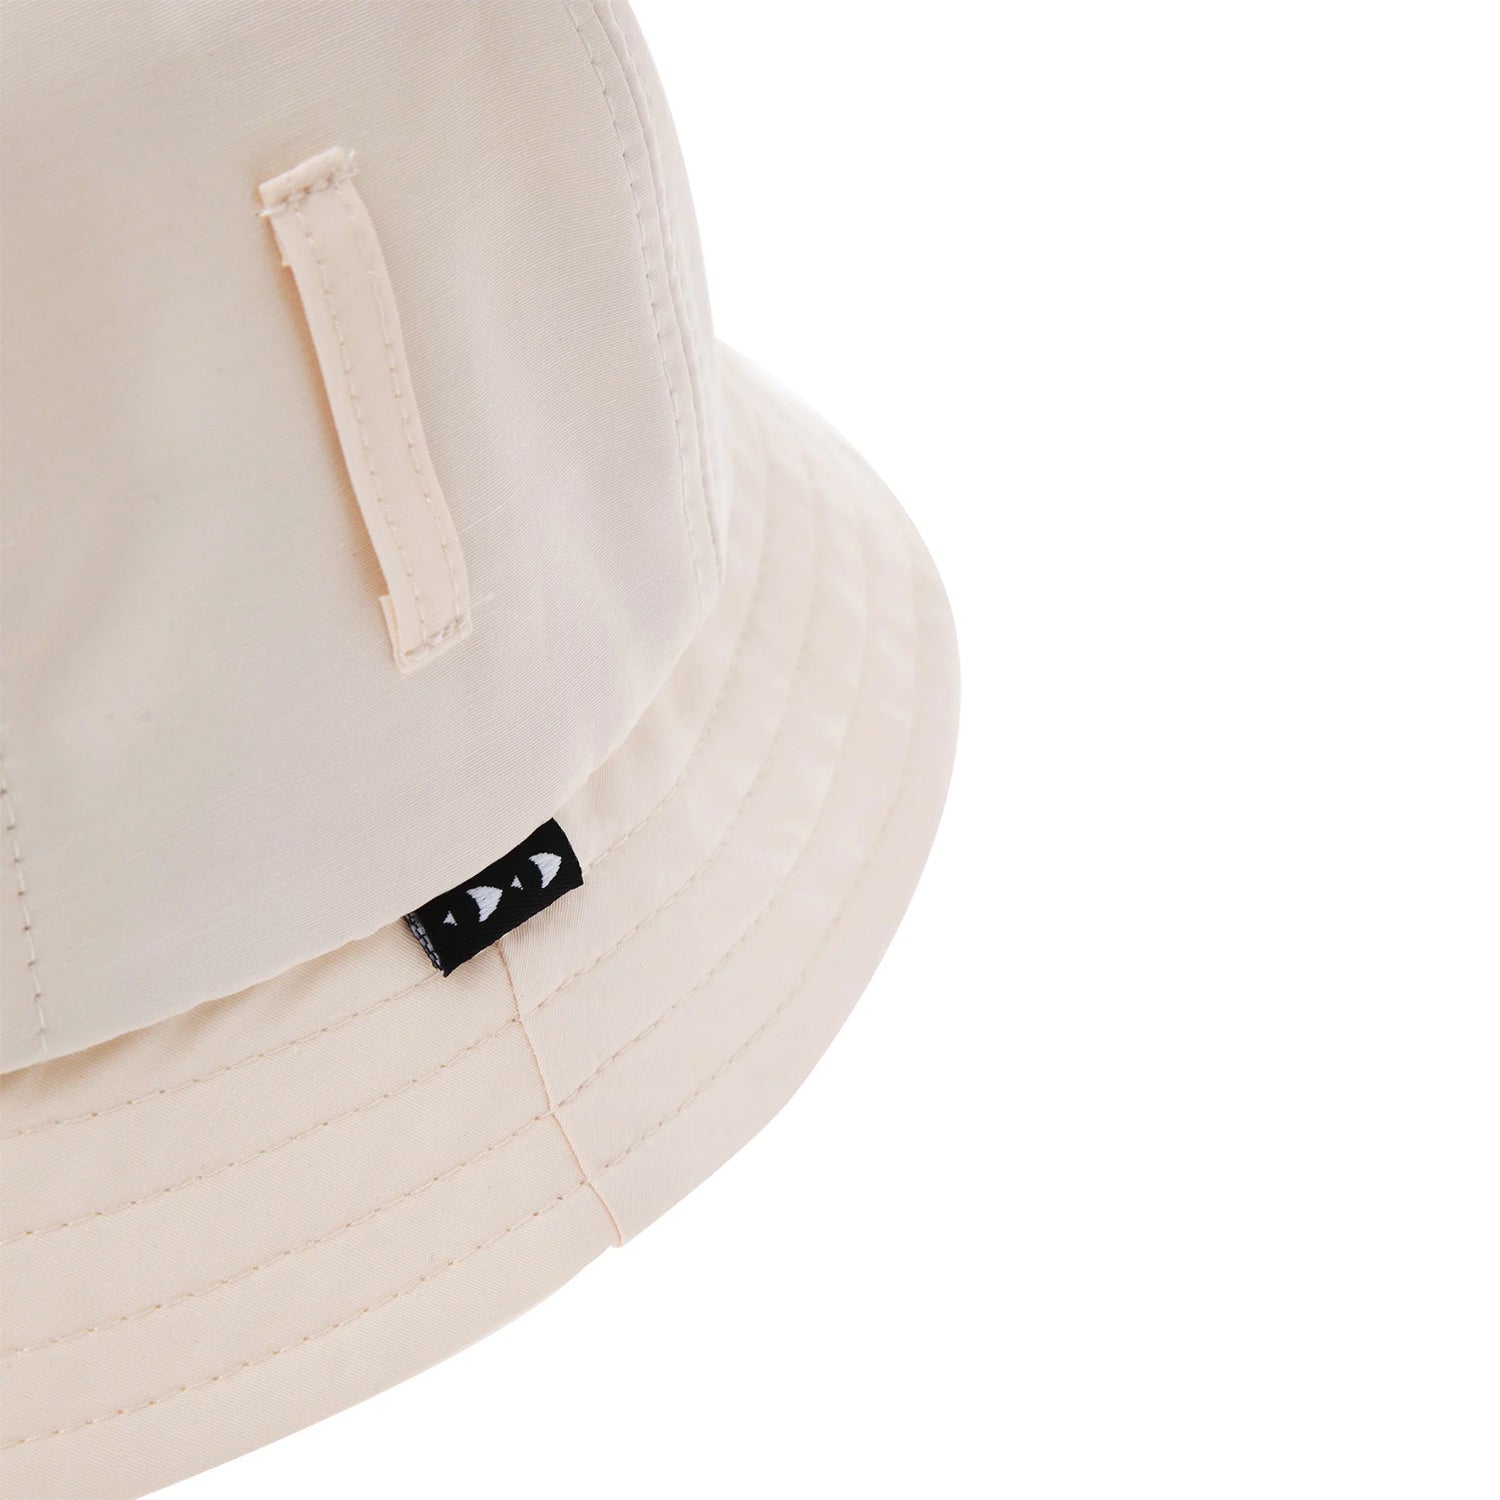 Getaway Bucket Hat (Cream)